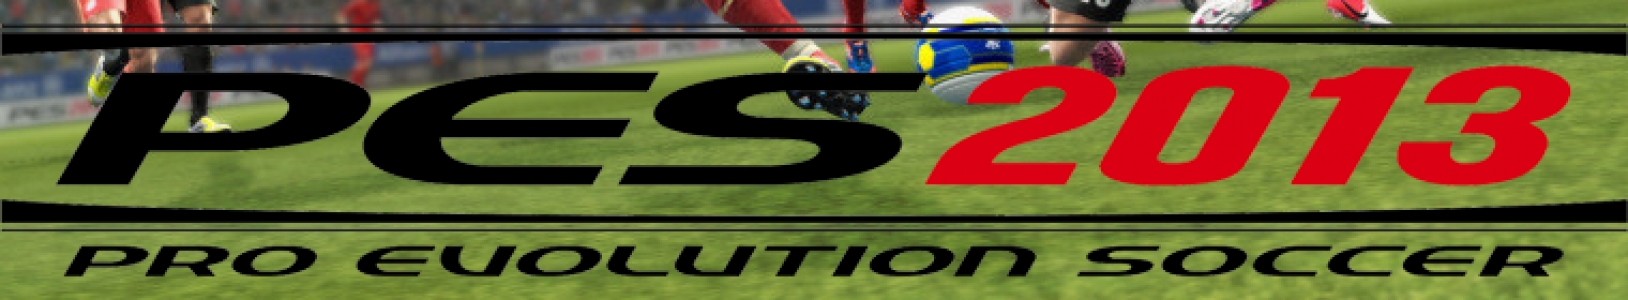 Pro Evolution Soccer 2013 banner